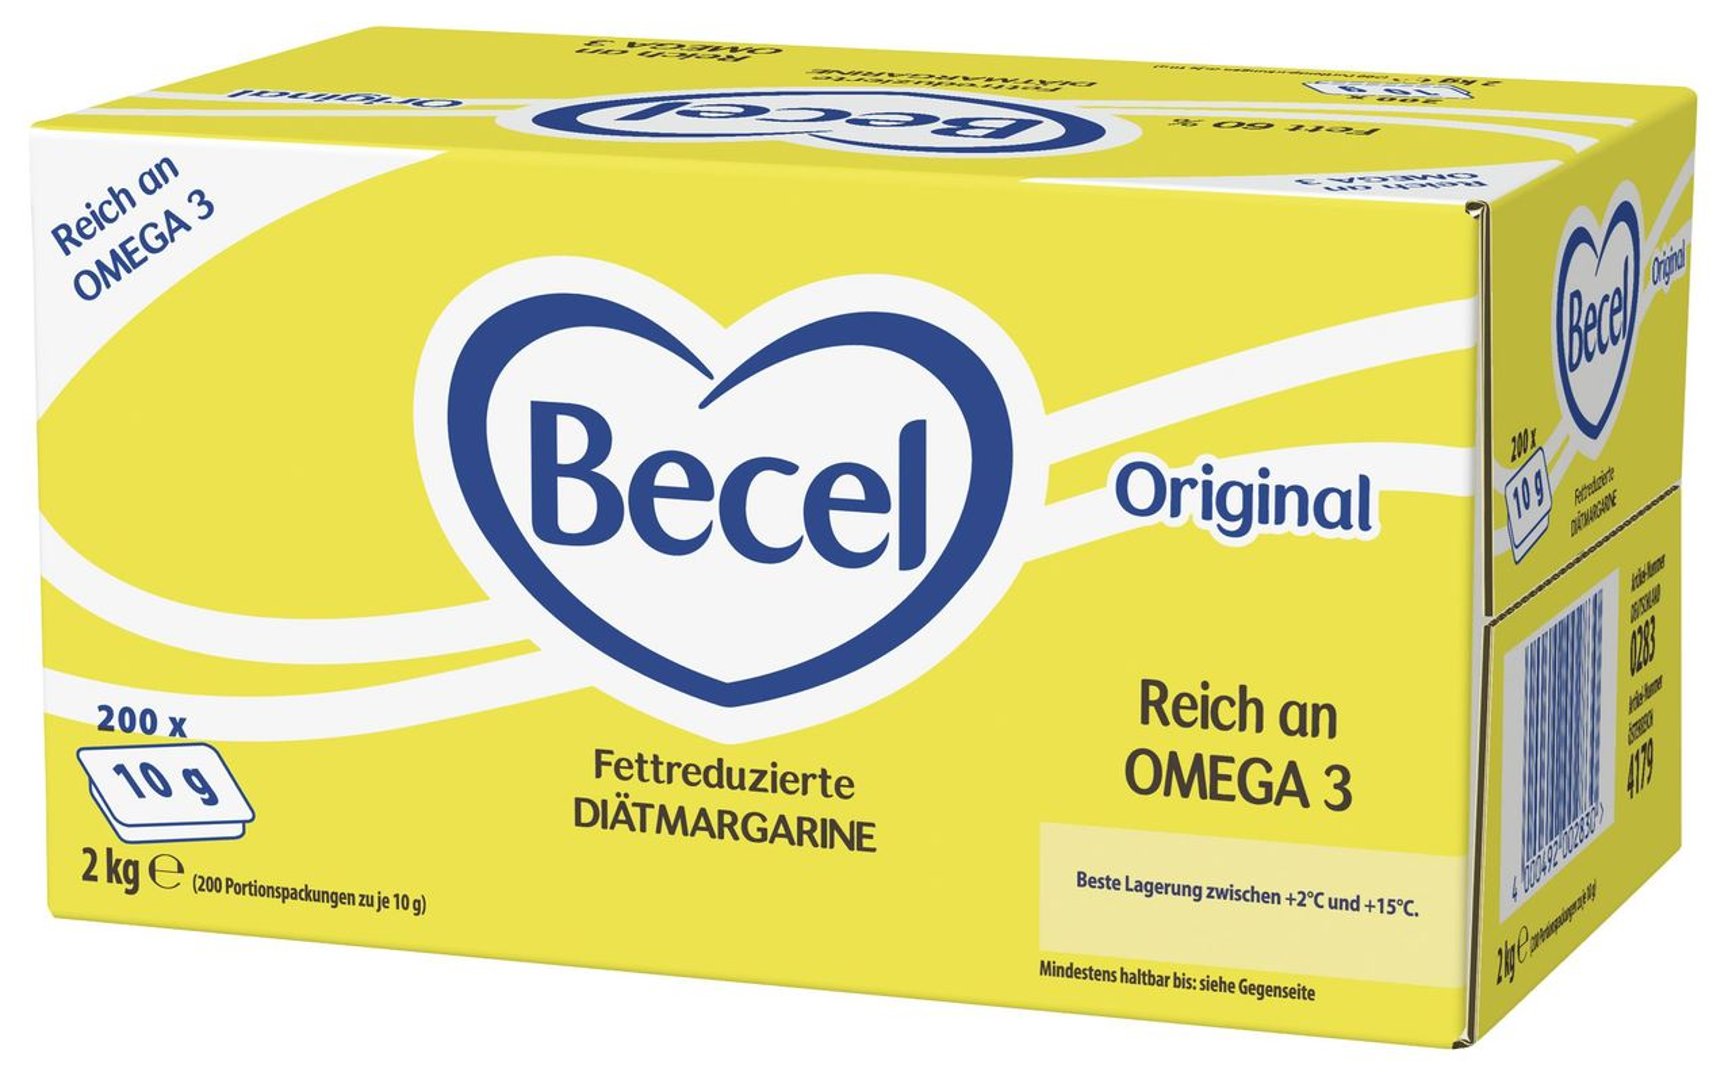 Becel - Original fettreduzierte Diätmargarine 60 % Fett gekühlt 120 Stück à 20 g - 2,4 kg Karton